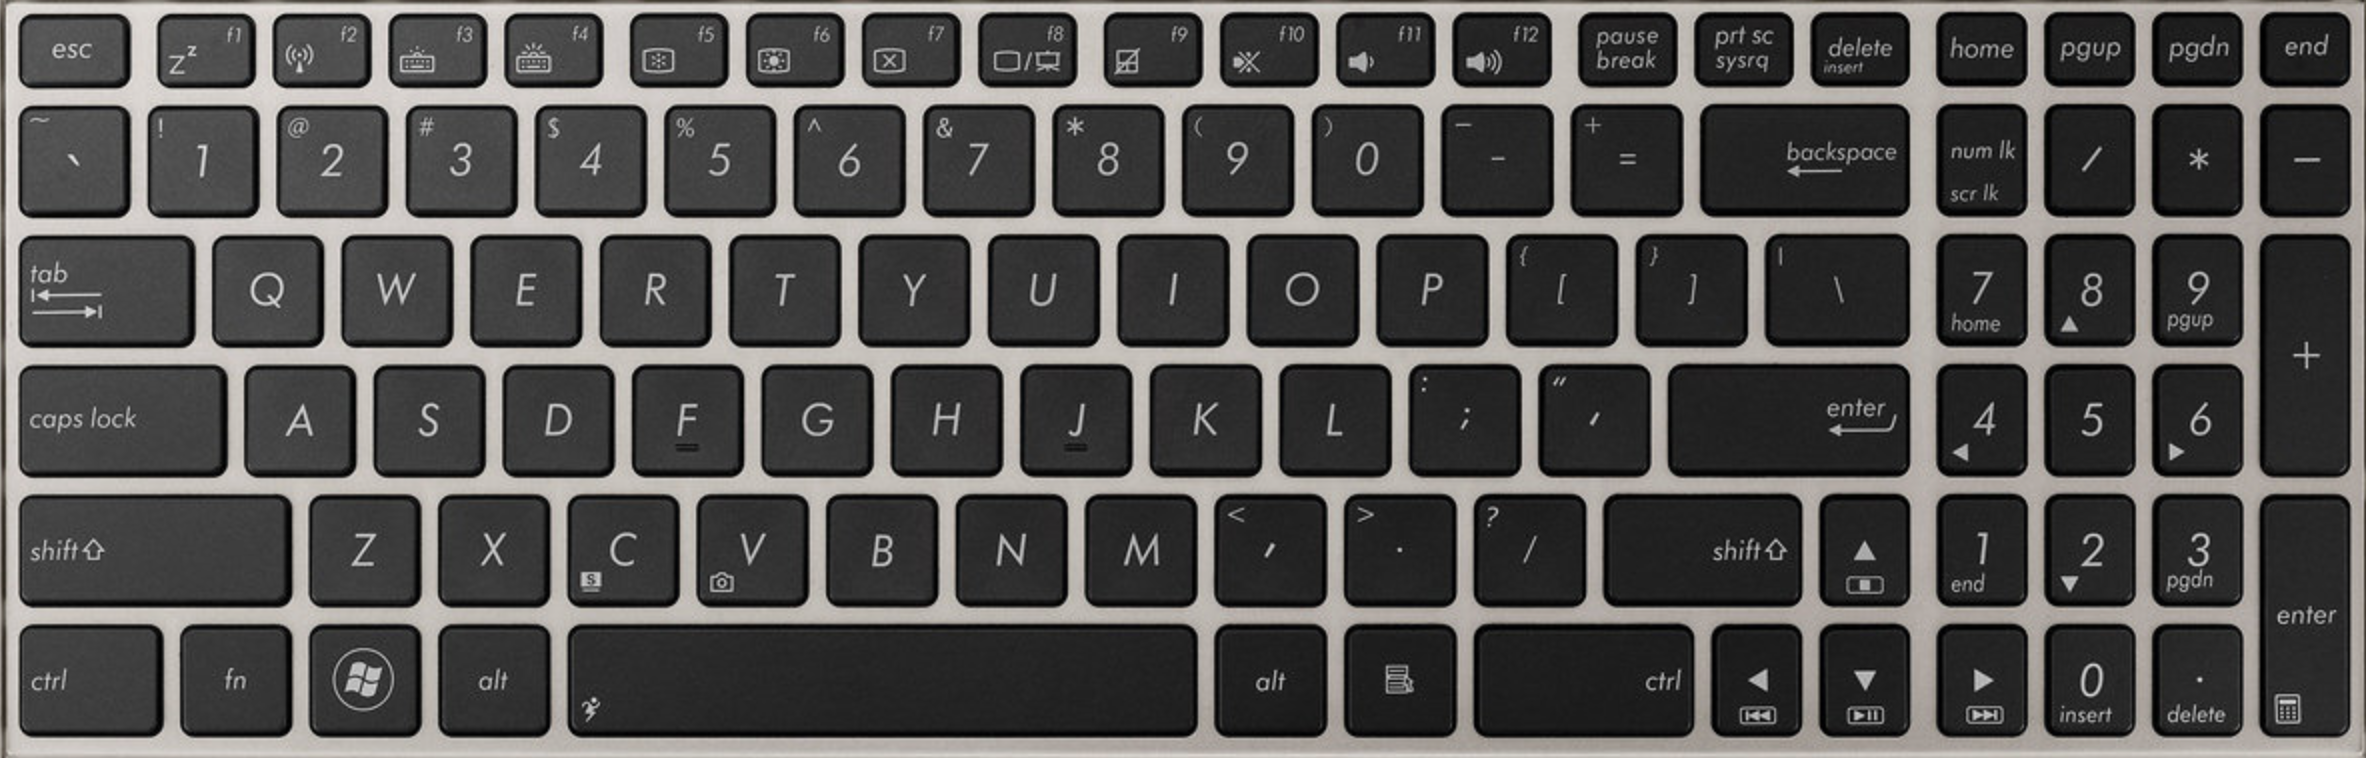 asus-UX51Z-XB71-replacement-laptop-keyboard-keys